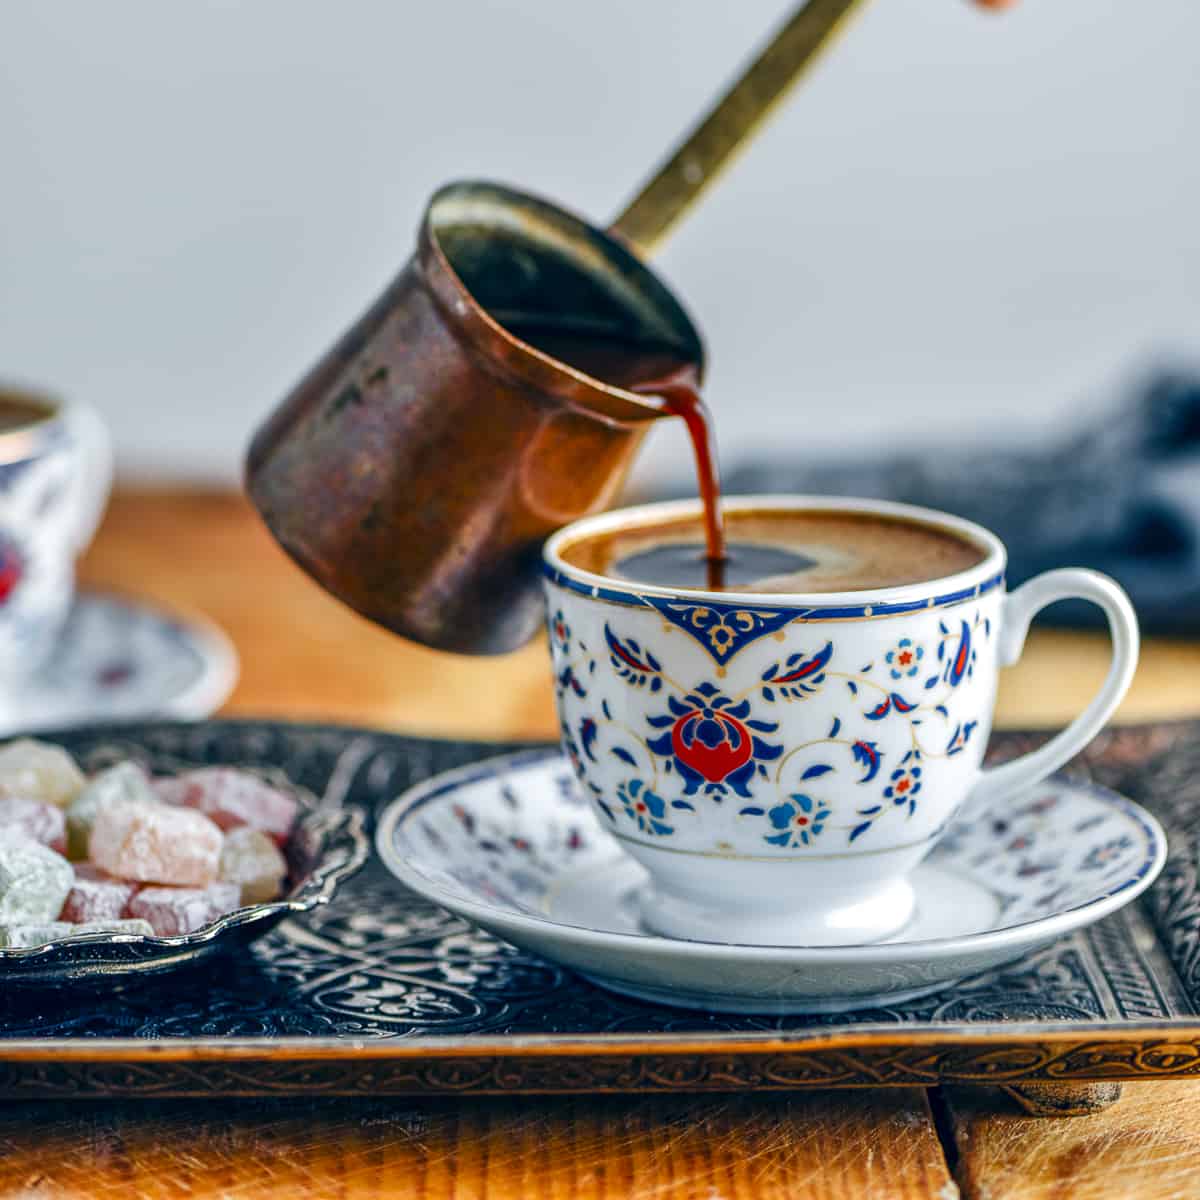 将土耳其咖啡从铜壶倒进传统咖啡杯。